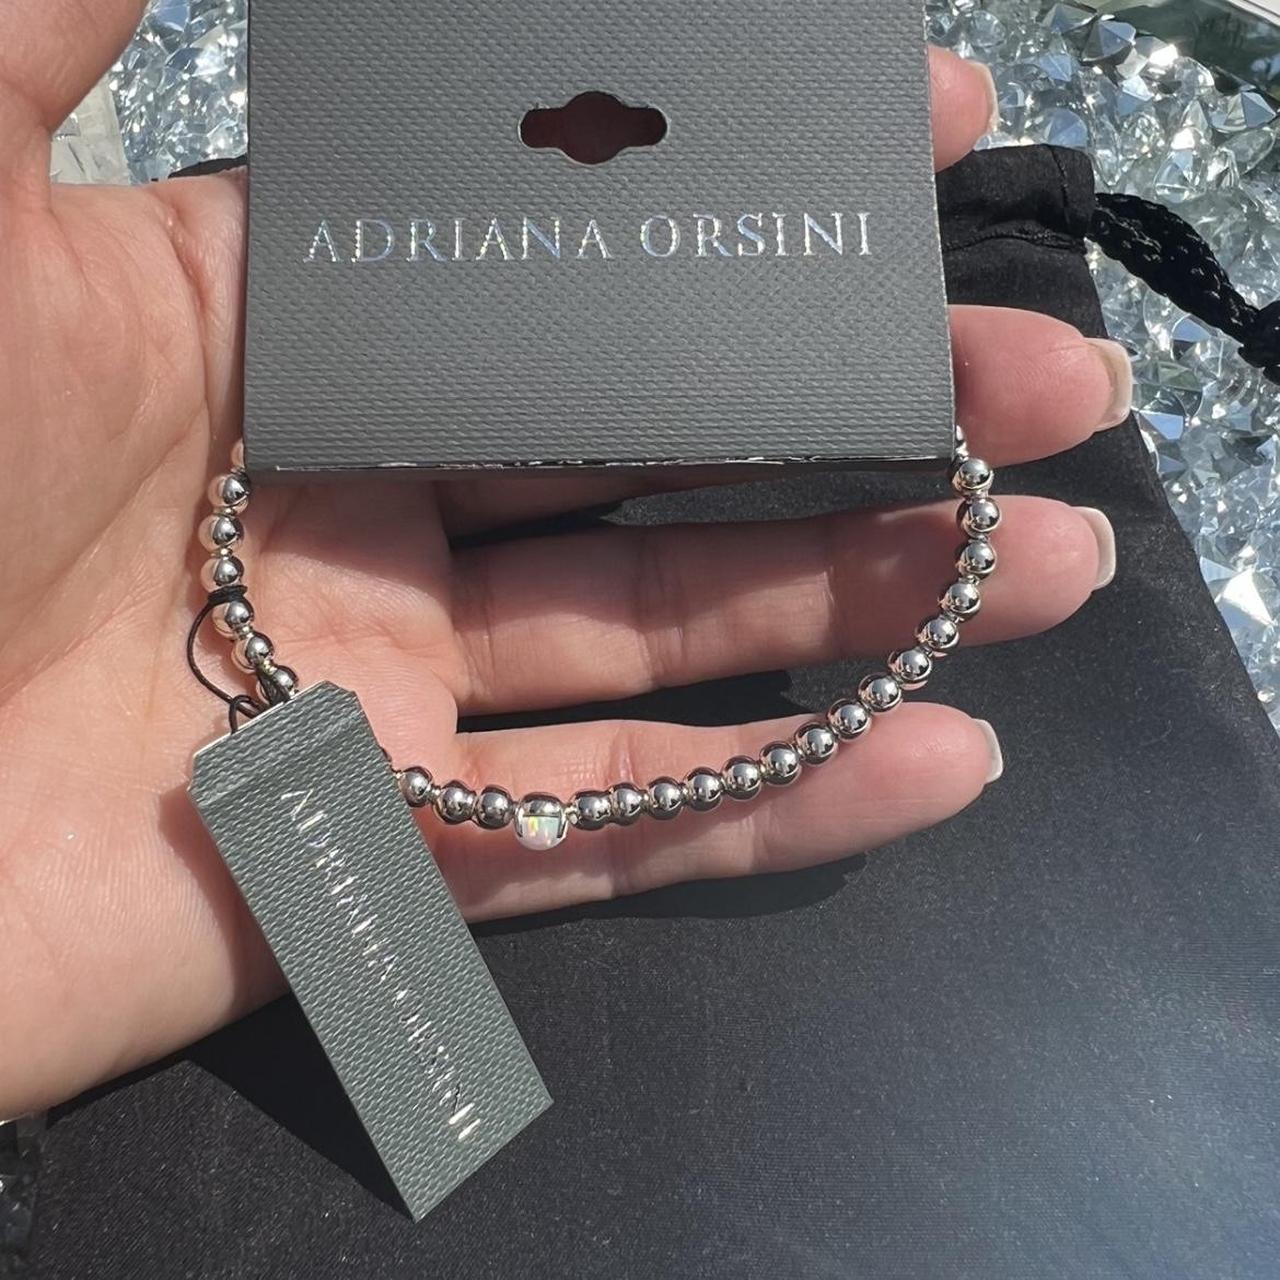 BEAUTIFUL ADRIANA ORSINI silver bracelet with cute... - Depop